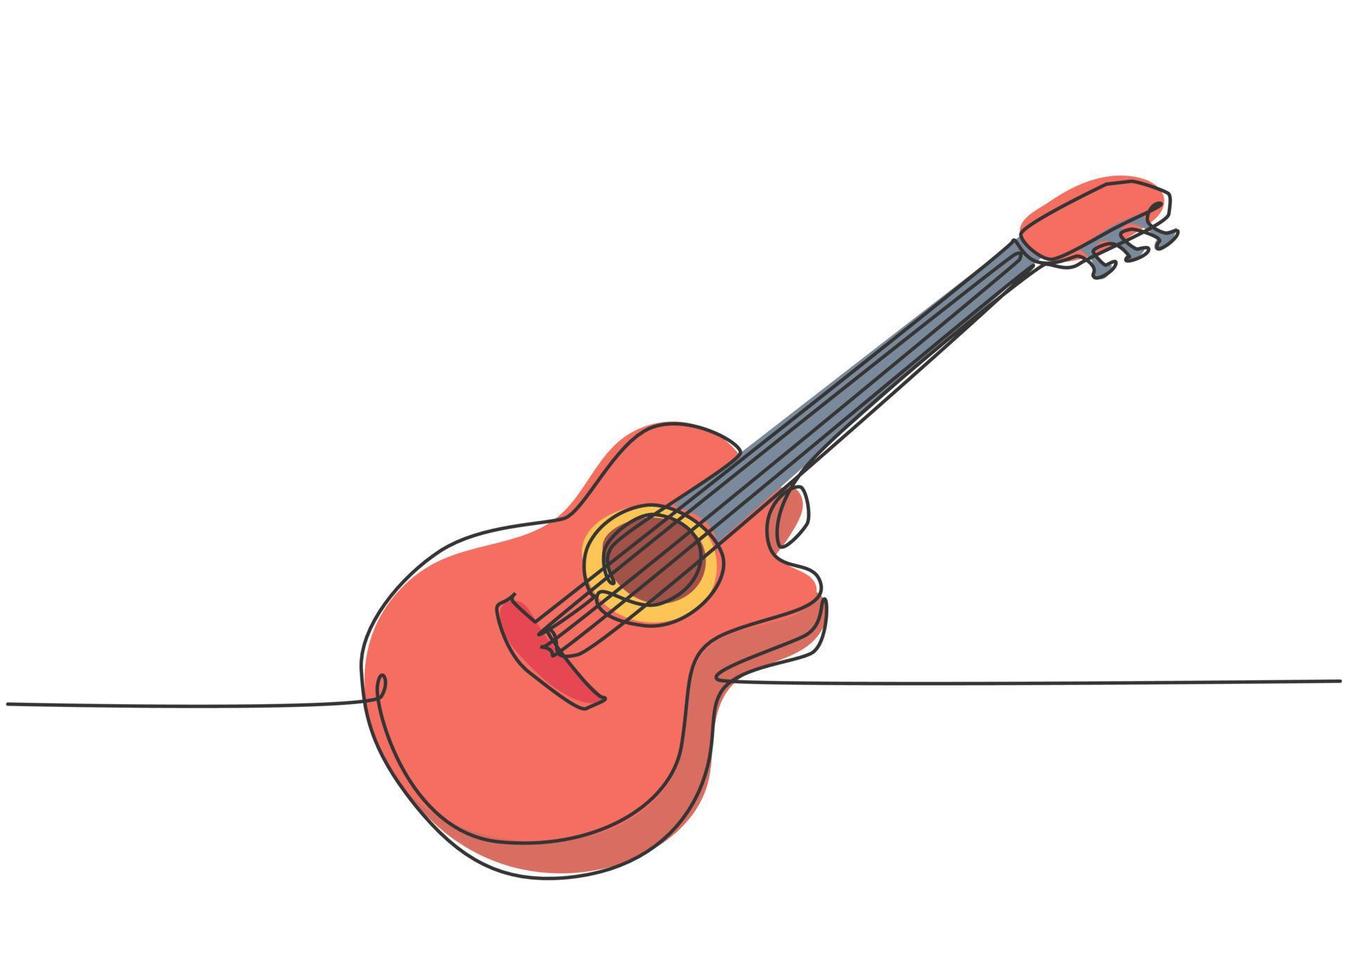 un disegno a tratteggio di una chitarra acustica classica in legno. moderno concetto di strumenti musicali a corde linea continua disegno illustrazione vettoriale graphic